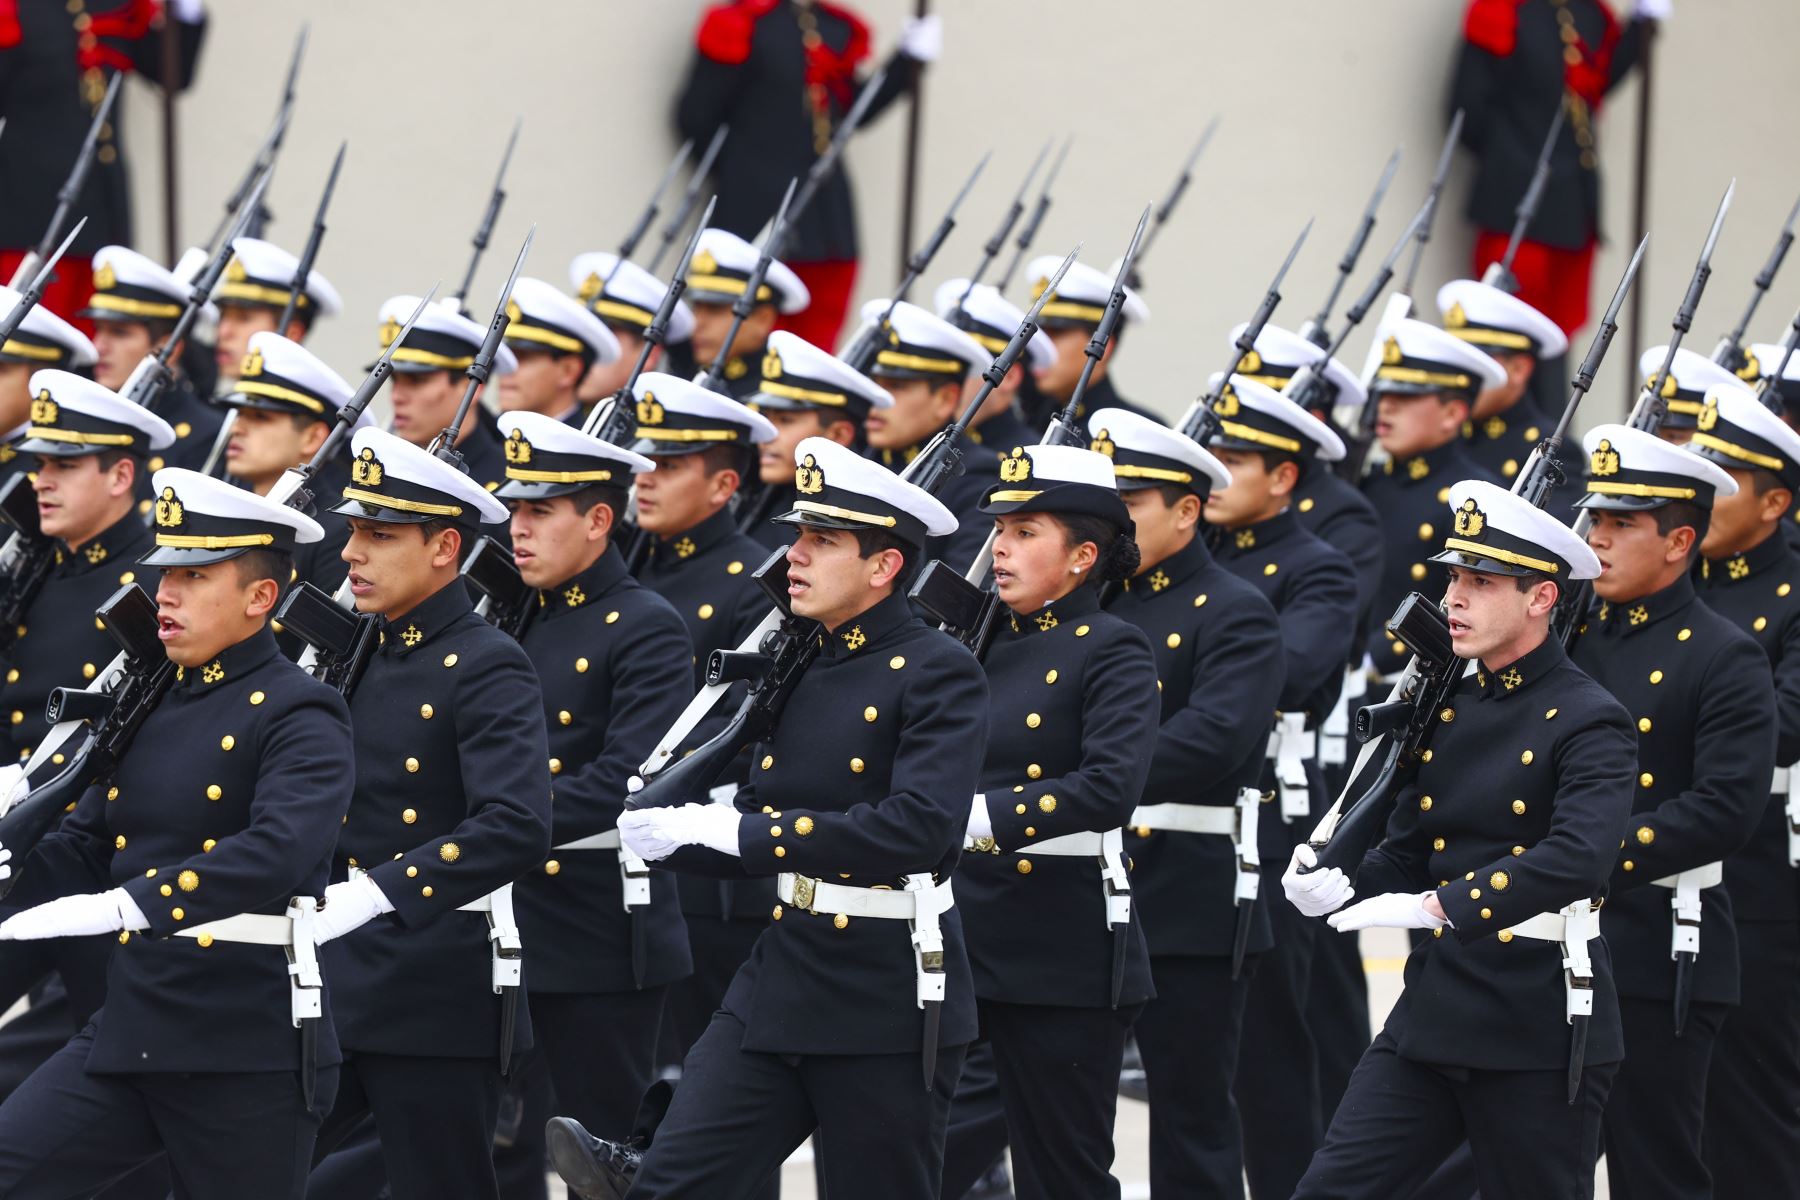 Con solemnidad y disciplina, portando nuestros símbolos patrios, la Marina de Guerra del Perú se hizo presente hoy en la Gran Parada y Desfile Militar 2022. Foto: ANDINA/Andrés Valle.